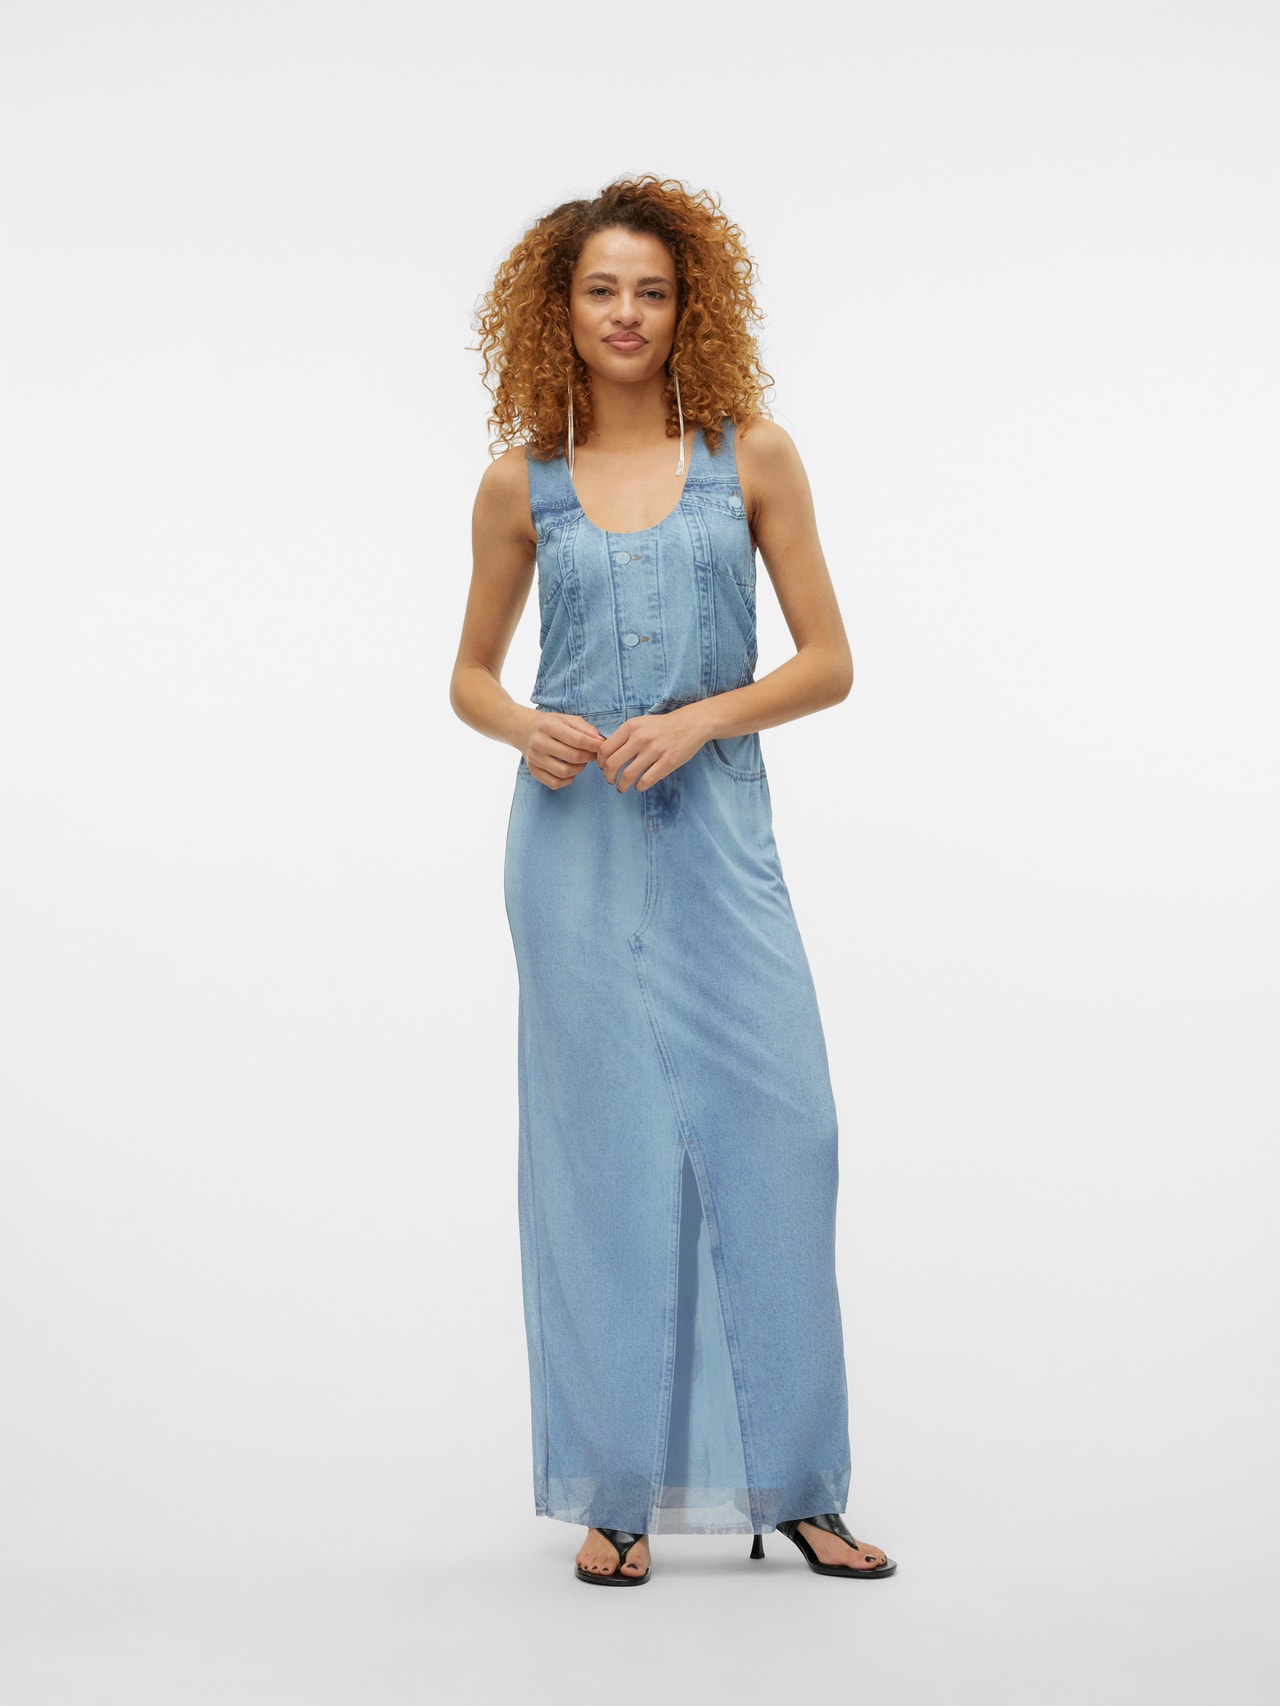 Vero Moda SOMETHINGNEW x SANDRA LAMBECK Long Skirt -Light Blue - 10306287